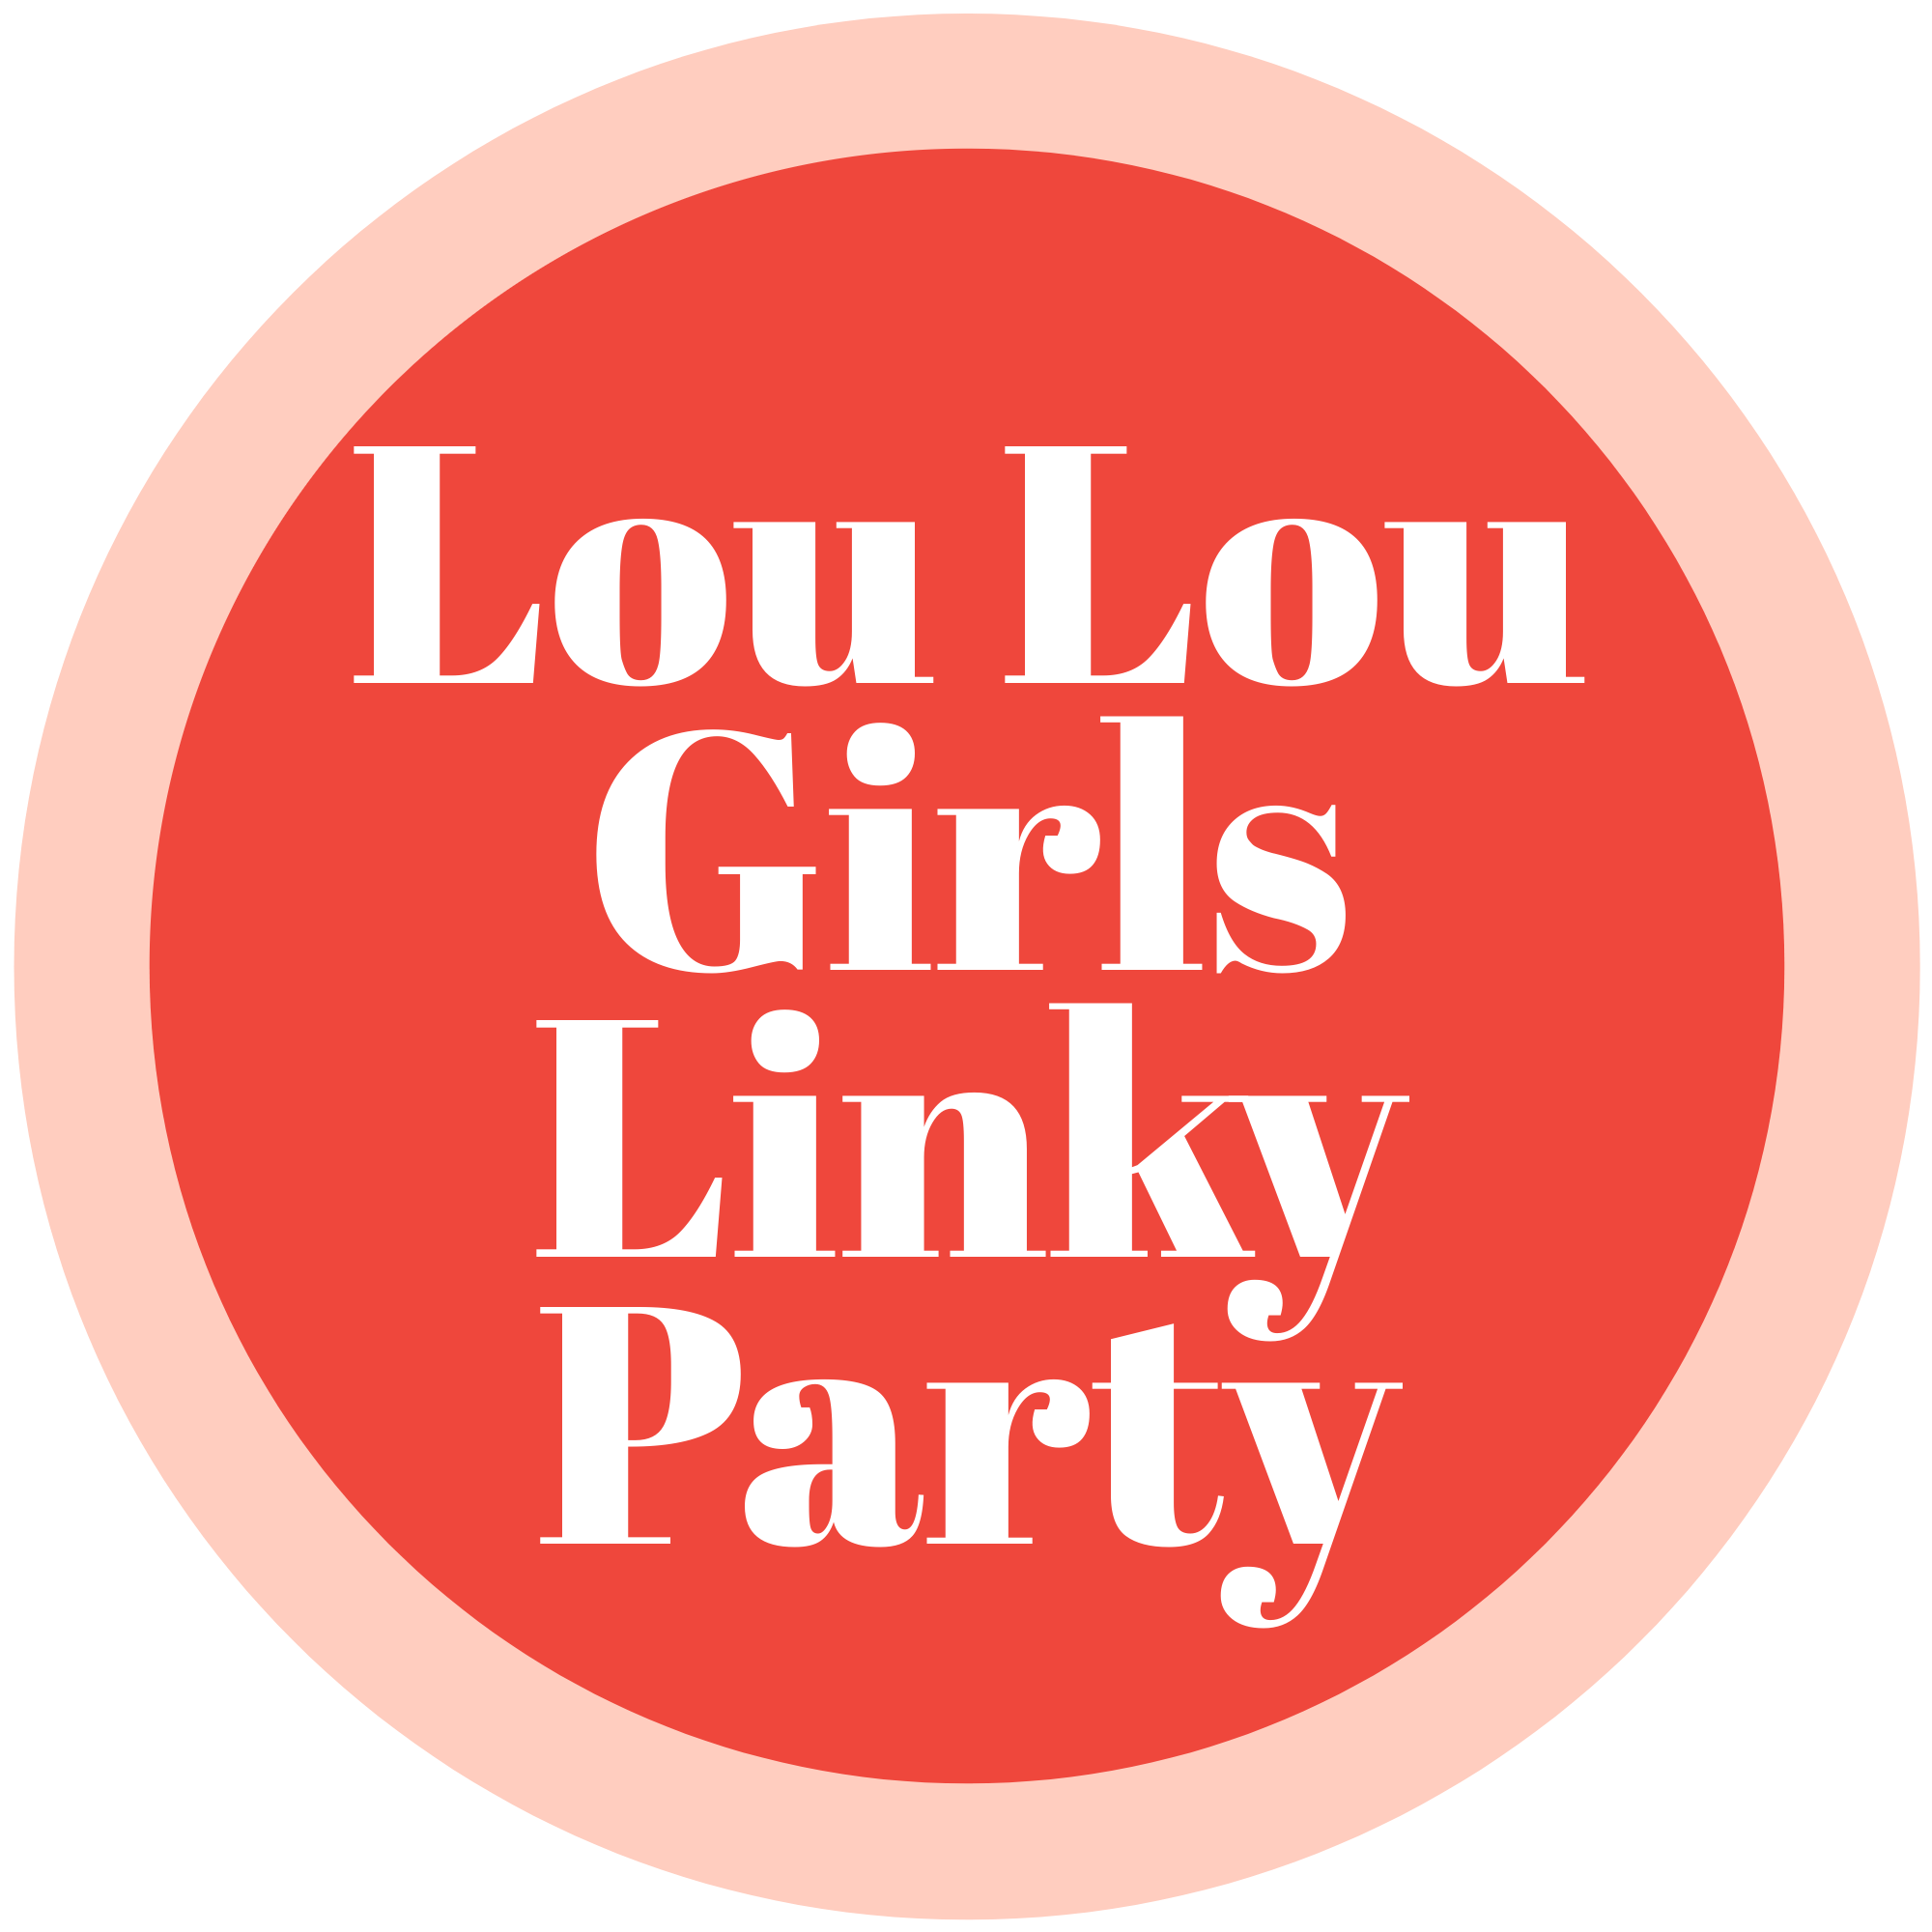 LOU LOU GIRLS FABULOUS PARTY 529